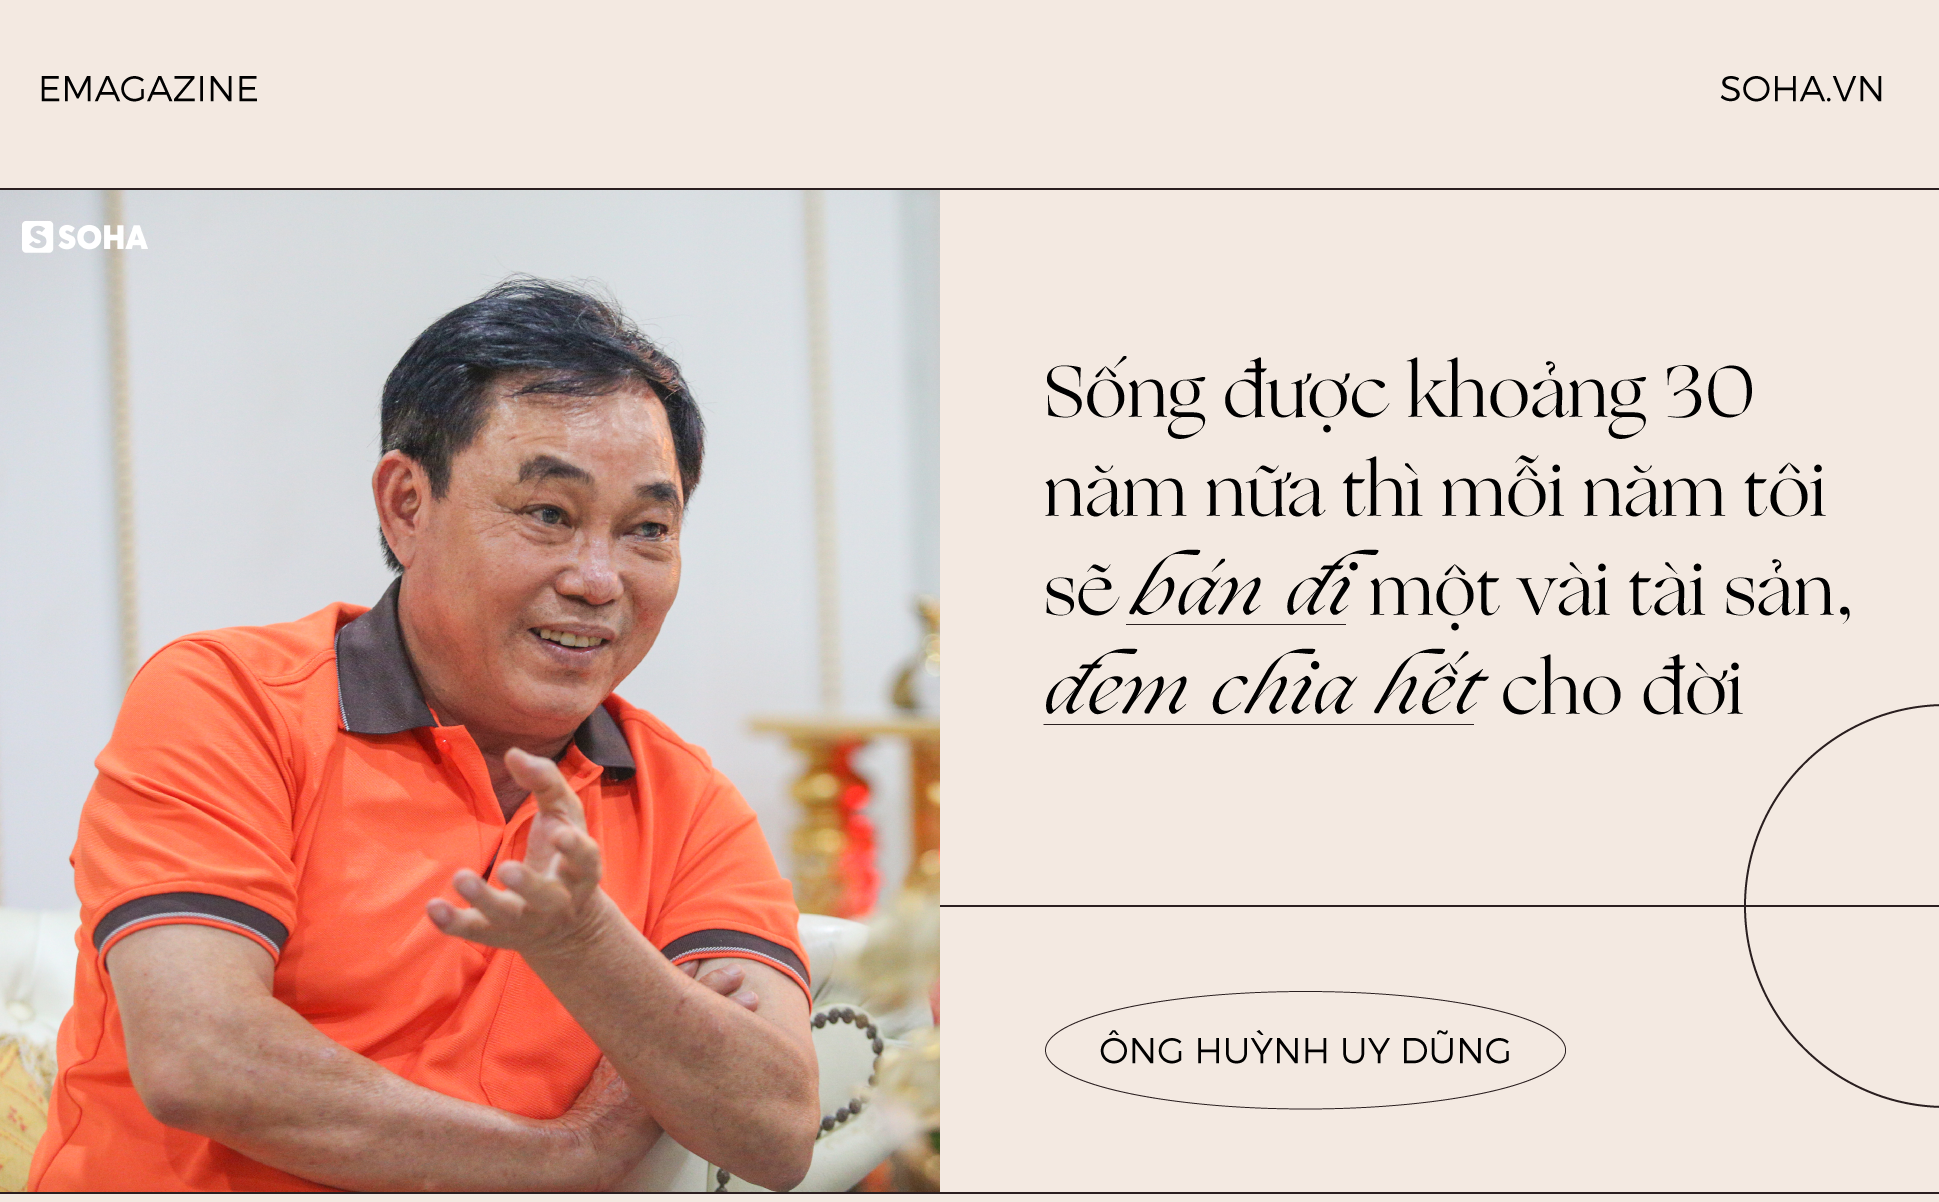 Ông Huỳnh Uy Dũng: “Sống được 30 năm nữa, mỗi năm tôi sẽ bán đi một vài tài sản, chia hết cho đời”